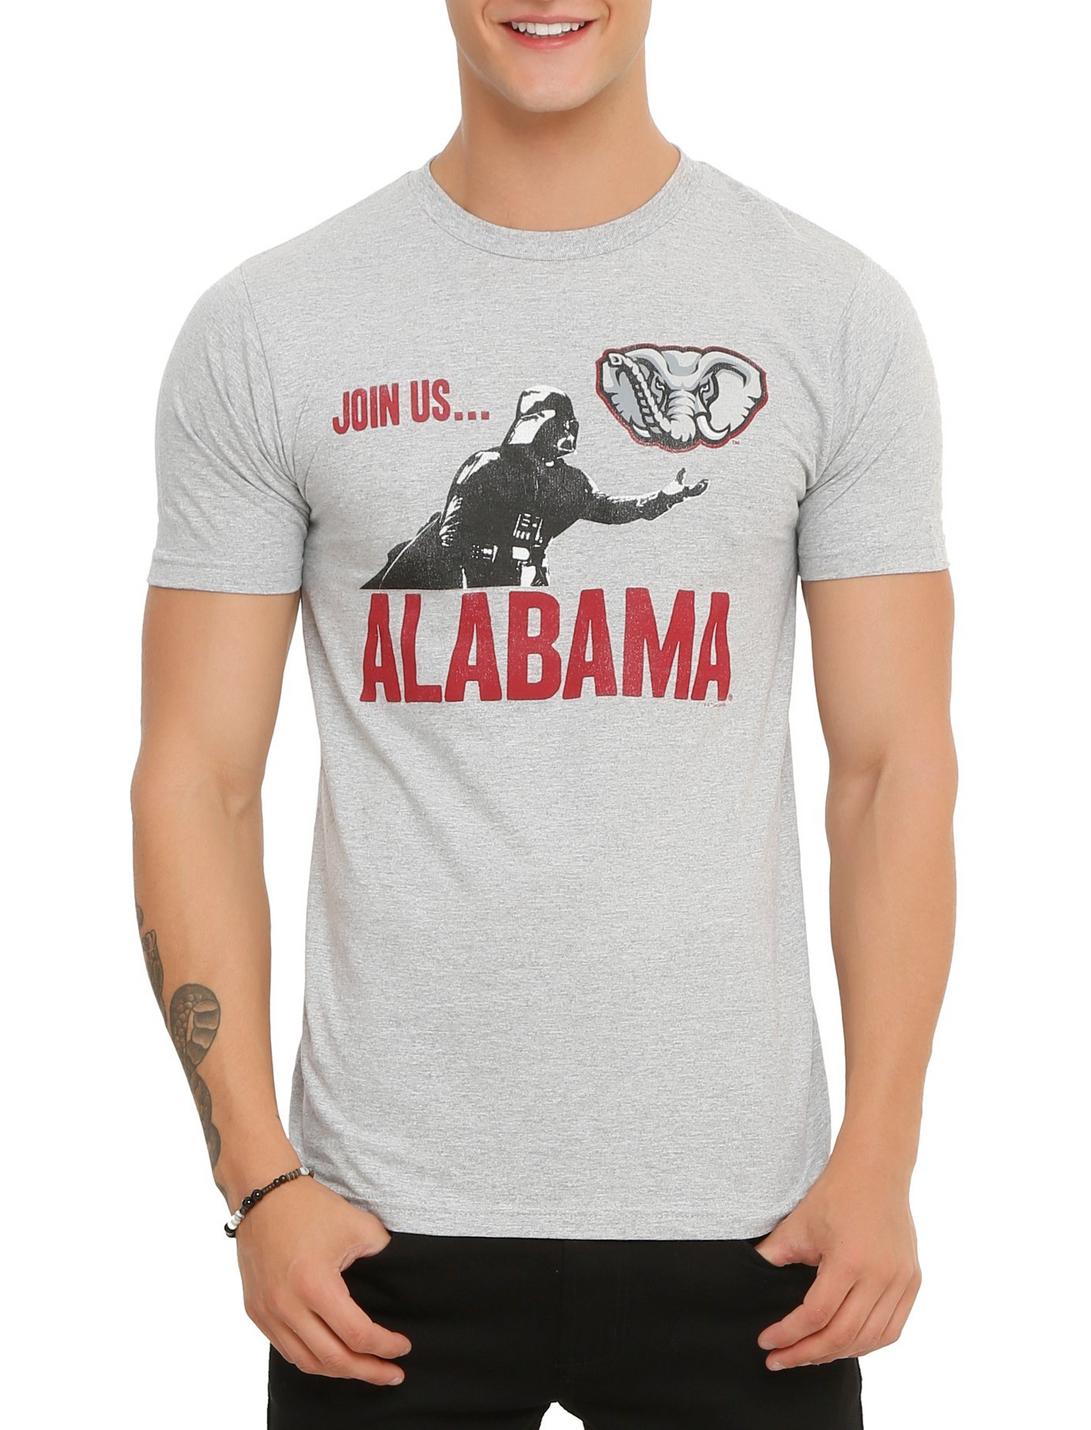 Star Wars NCAA Alabama Darth Vader T-Shirt | Hot Topic